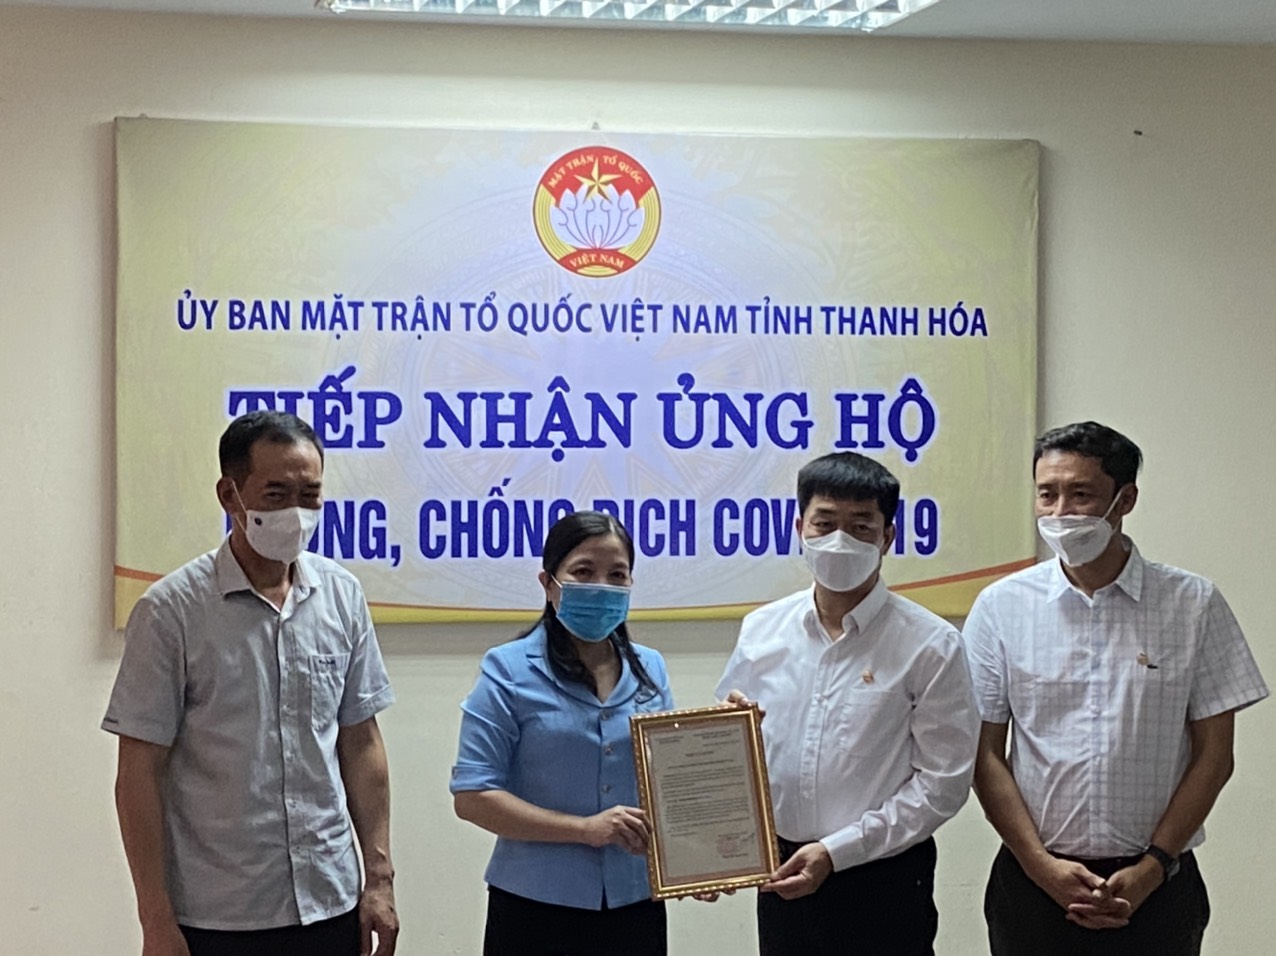 Sun Group ủng hộ Thanh Hóa 10 tỷ đồng phòng chống dịch Covid-19